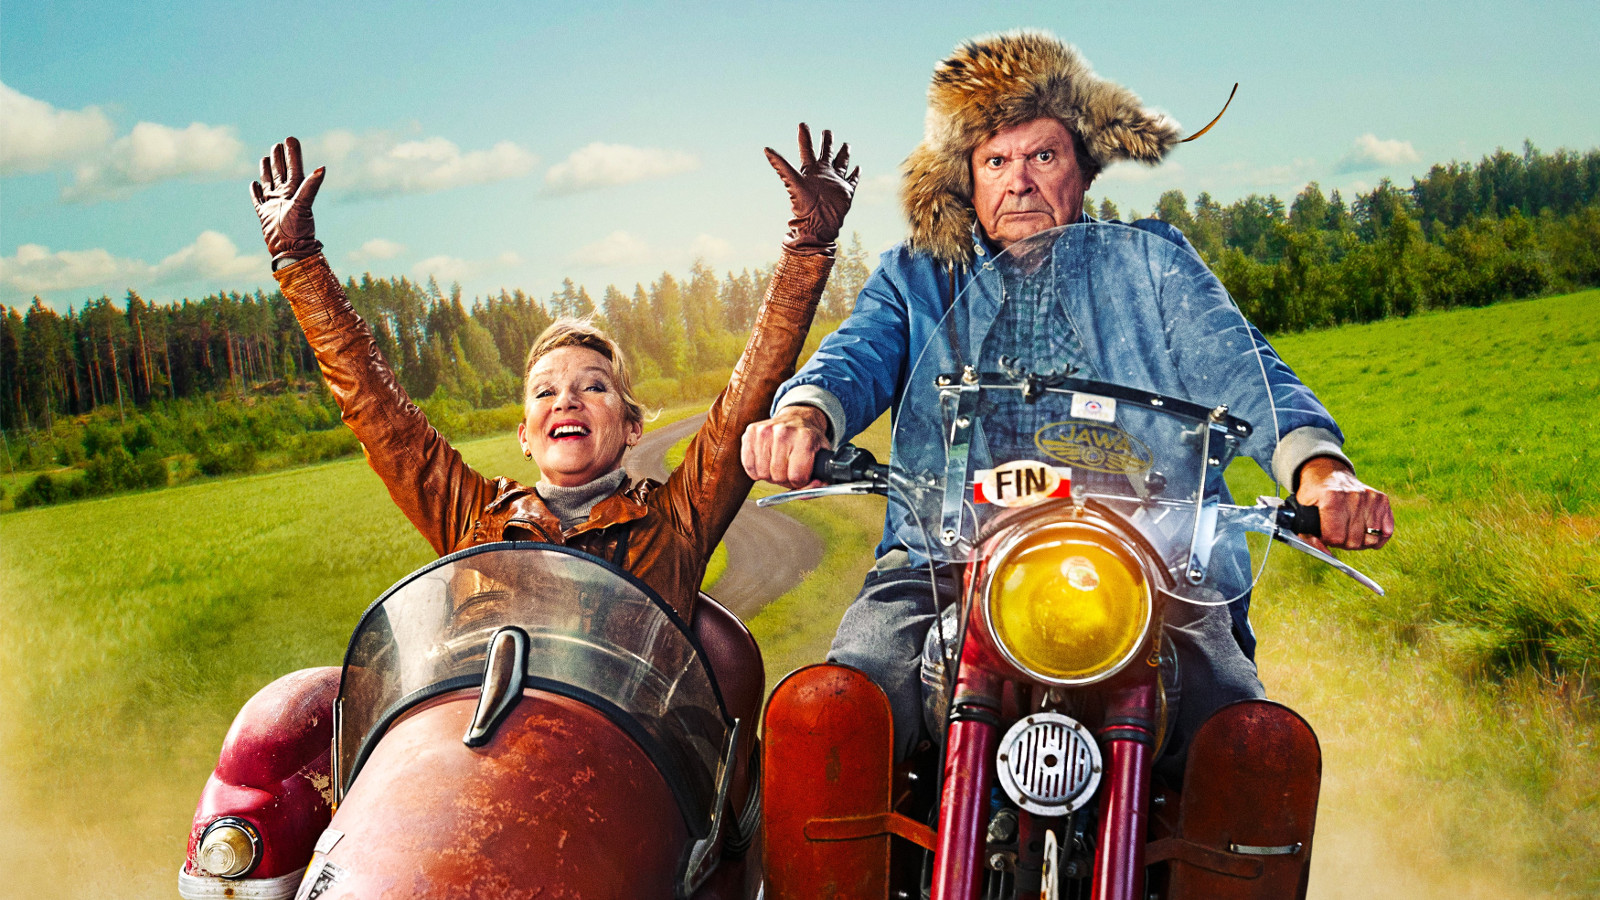 Kuvassa on Heikki Kinnunen ajamassa vanhaa moottoripyörää. Hänellä on sininen takki päällään ja karvahattu päässään. Vasemmalla on ruskeassa sivuvaunussa ja siinä istuu Jaana Saarinen kädet ylhäällä ruskeassa nahkatakissa. Taustalla on vihreää maalaismaisemaa.